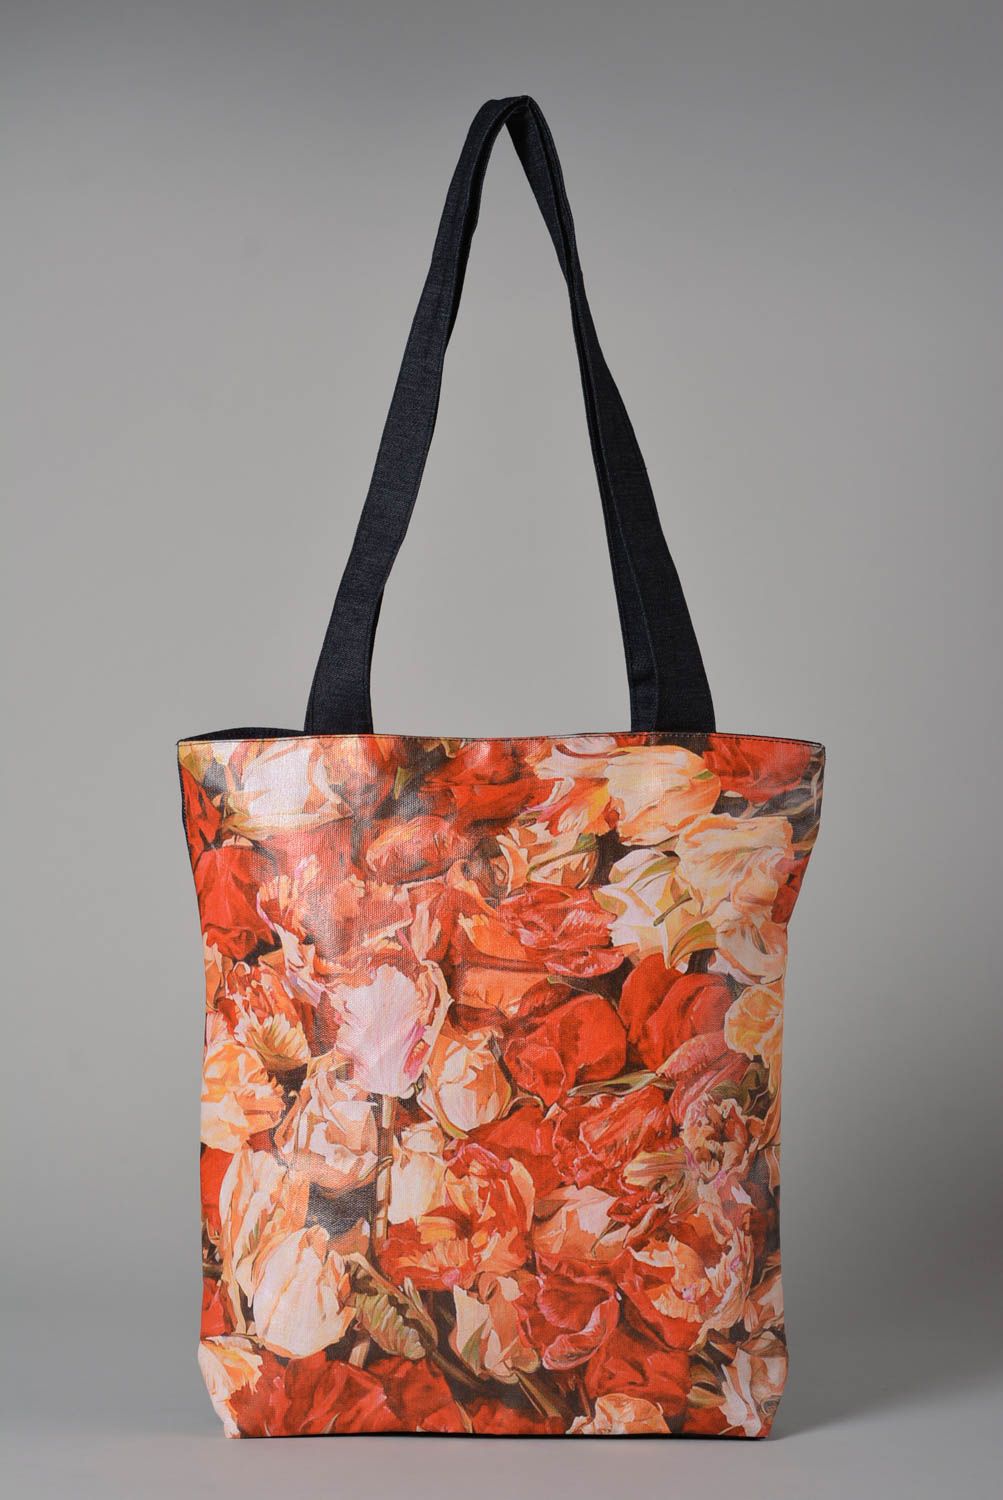 Джинсовая сумка ручной работы сумка для женщины сумка с рисунком красивая сумка фото 1